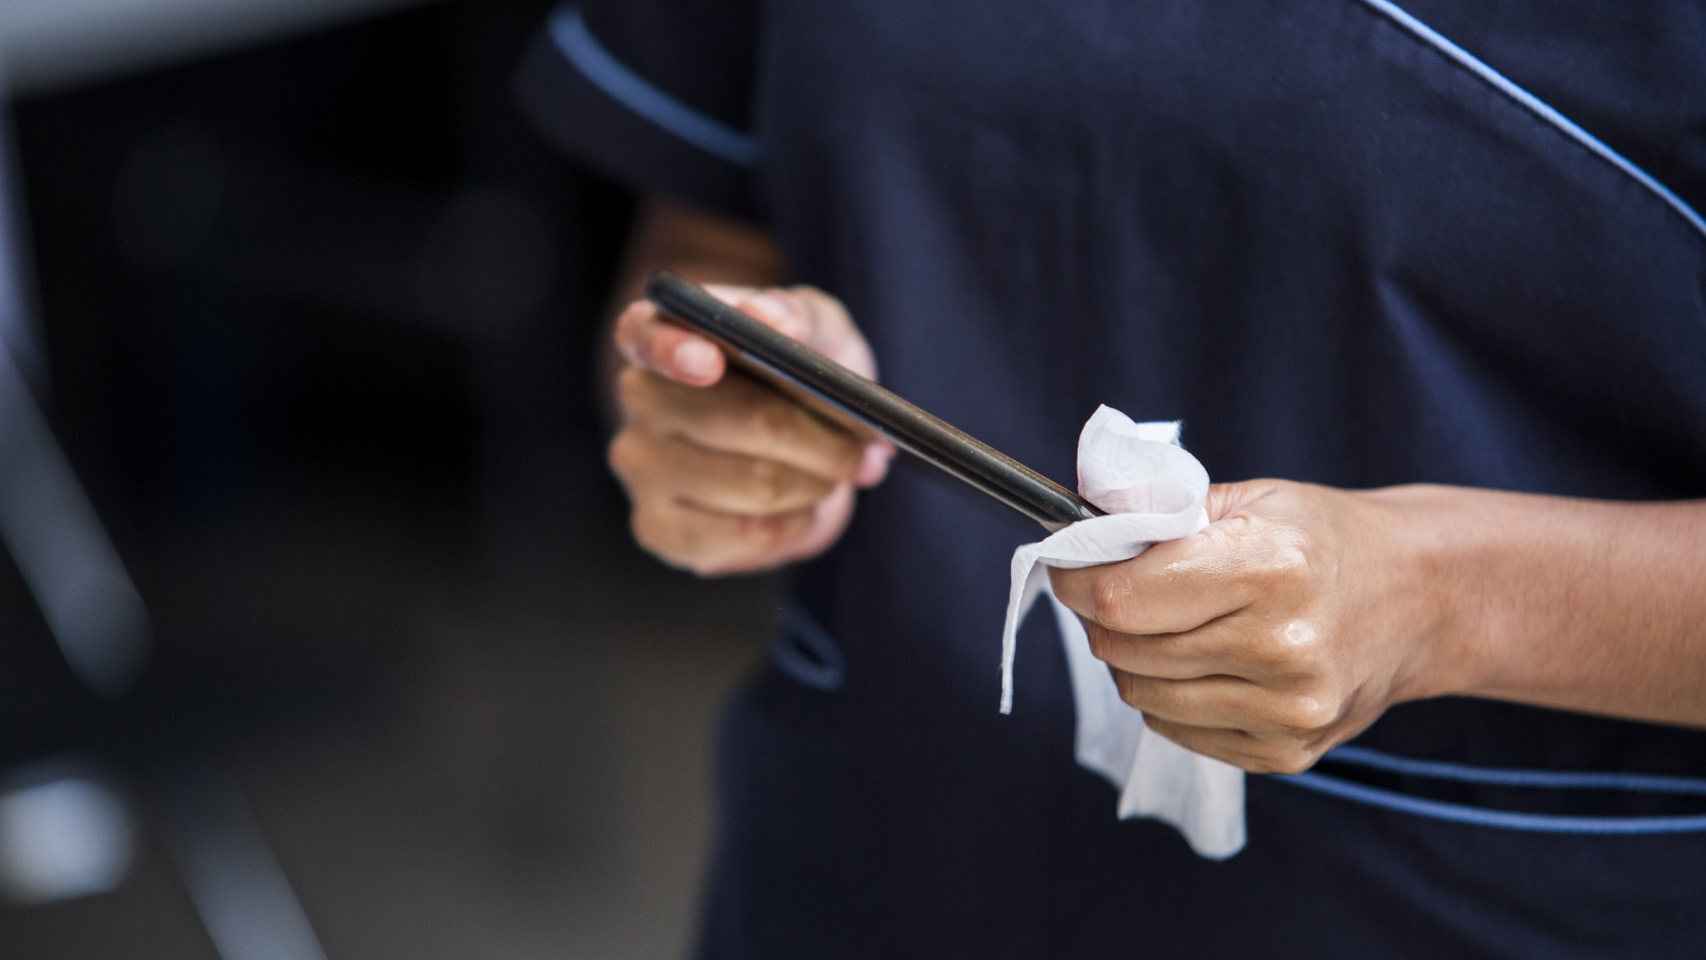 Limpiar el móvil es importante, pero no debería ser una obsesión